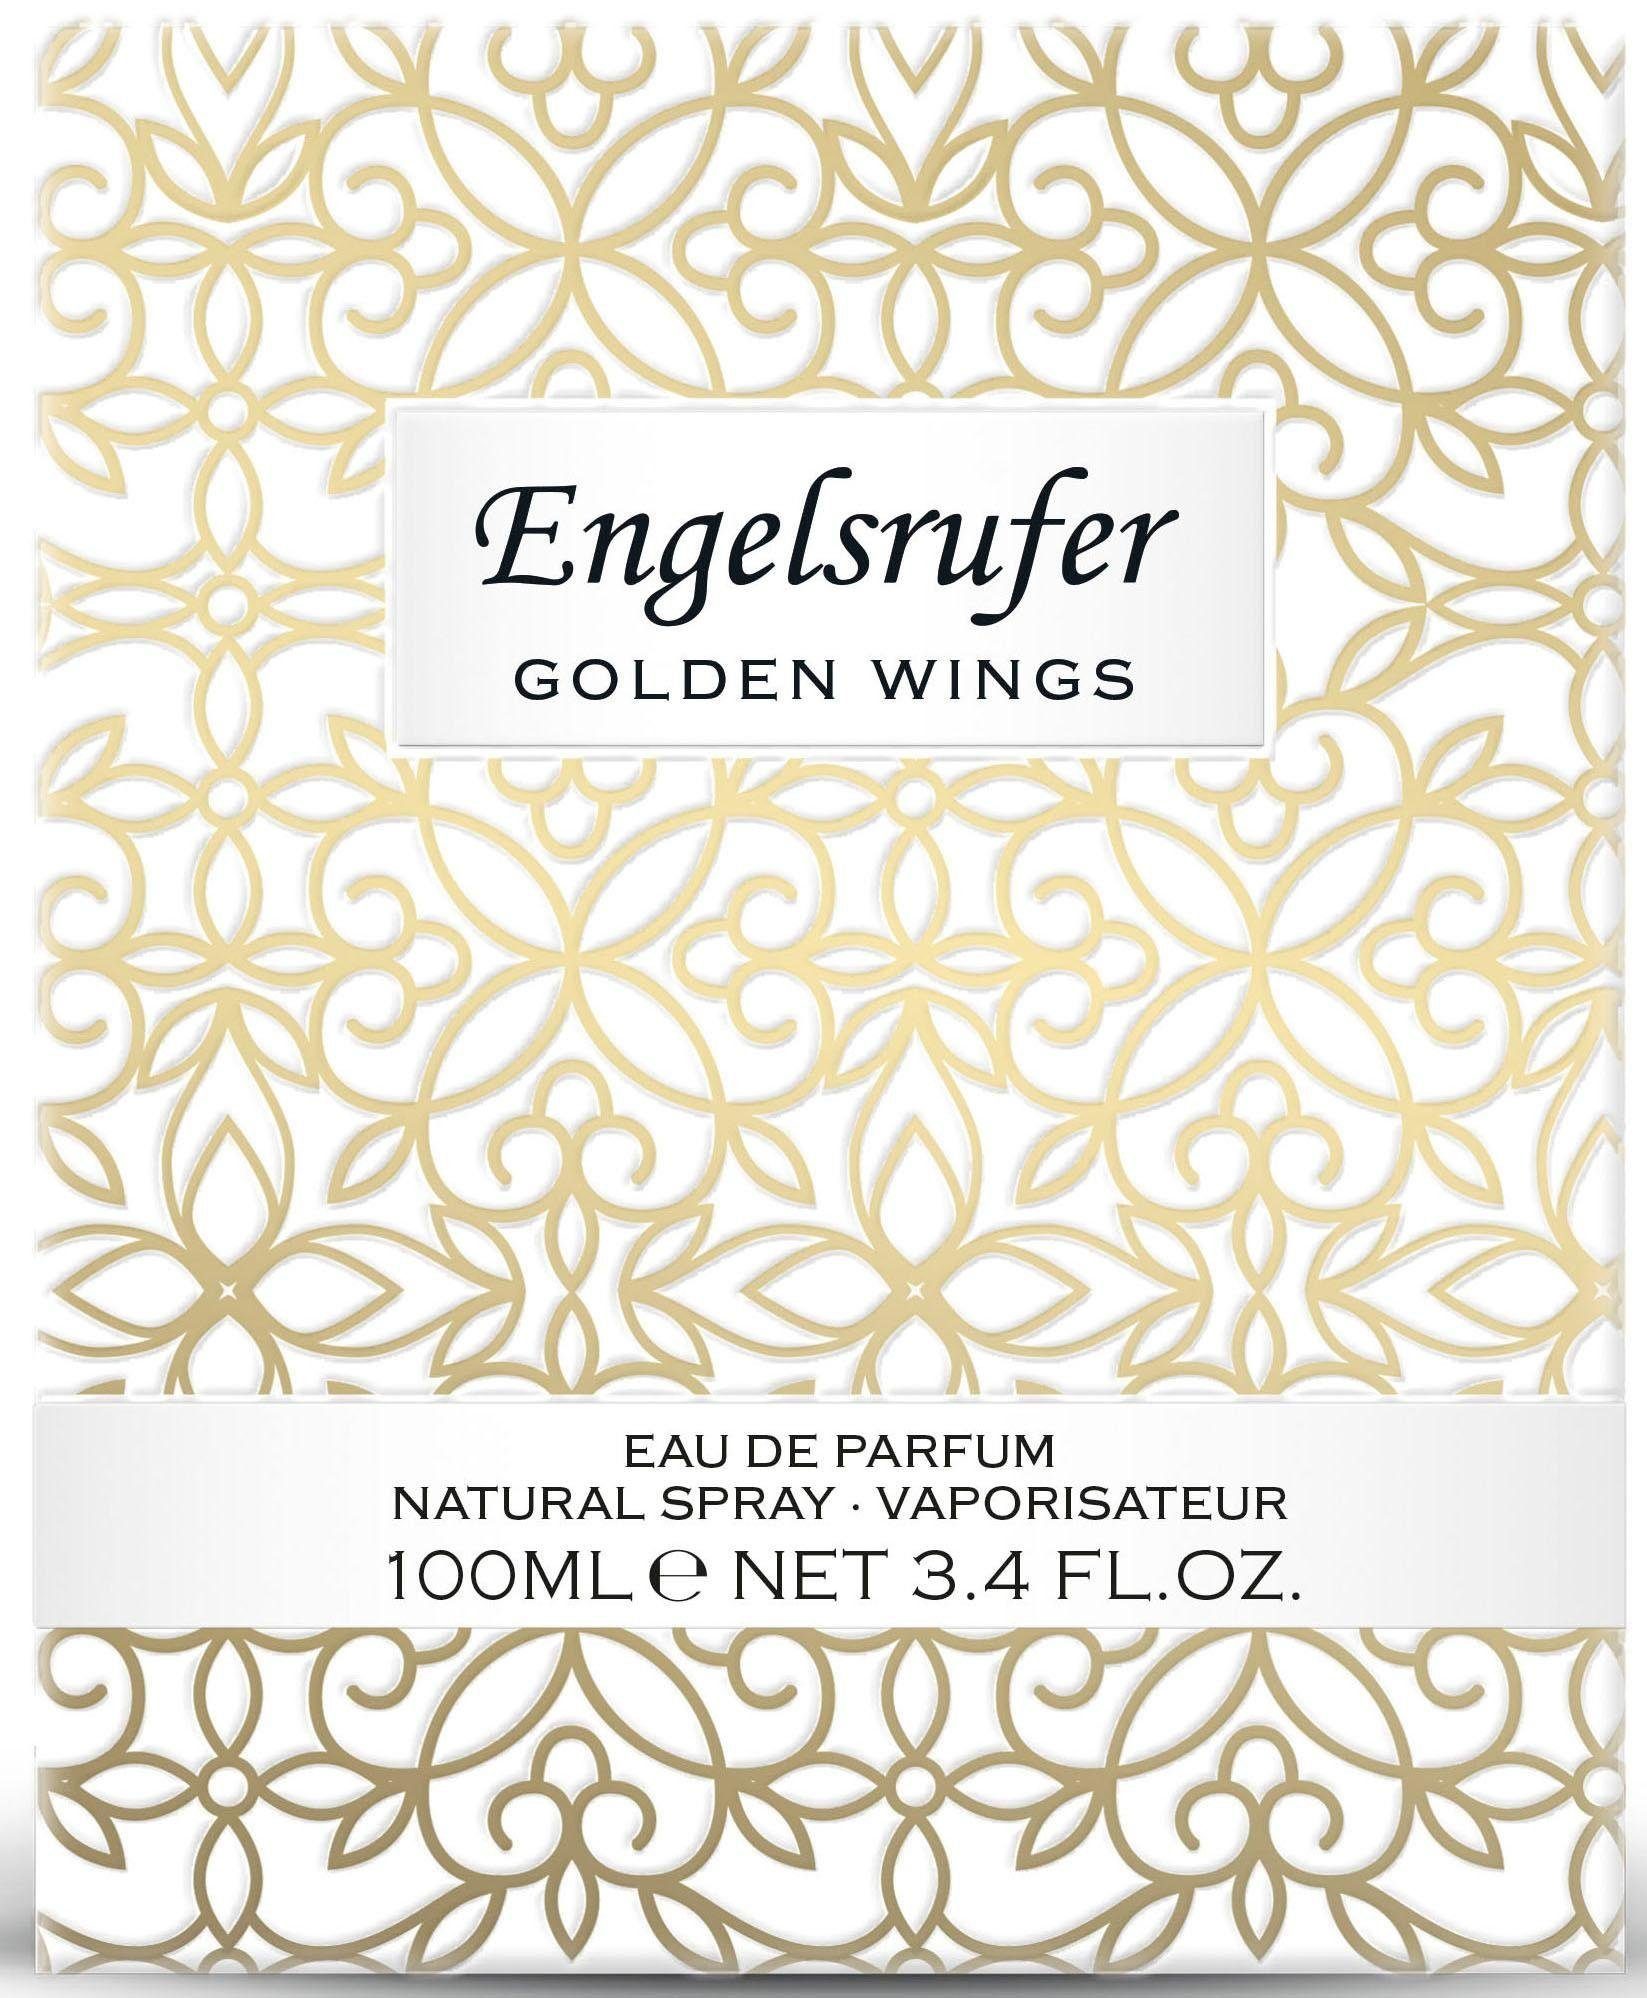 Wings Engelsrufer Golden Parfum Eau de